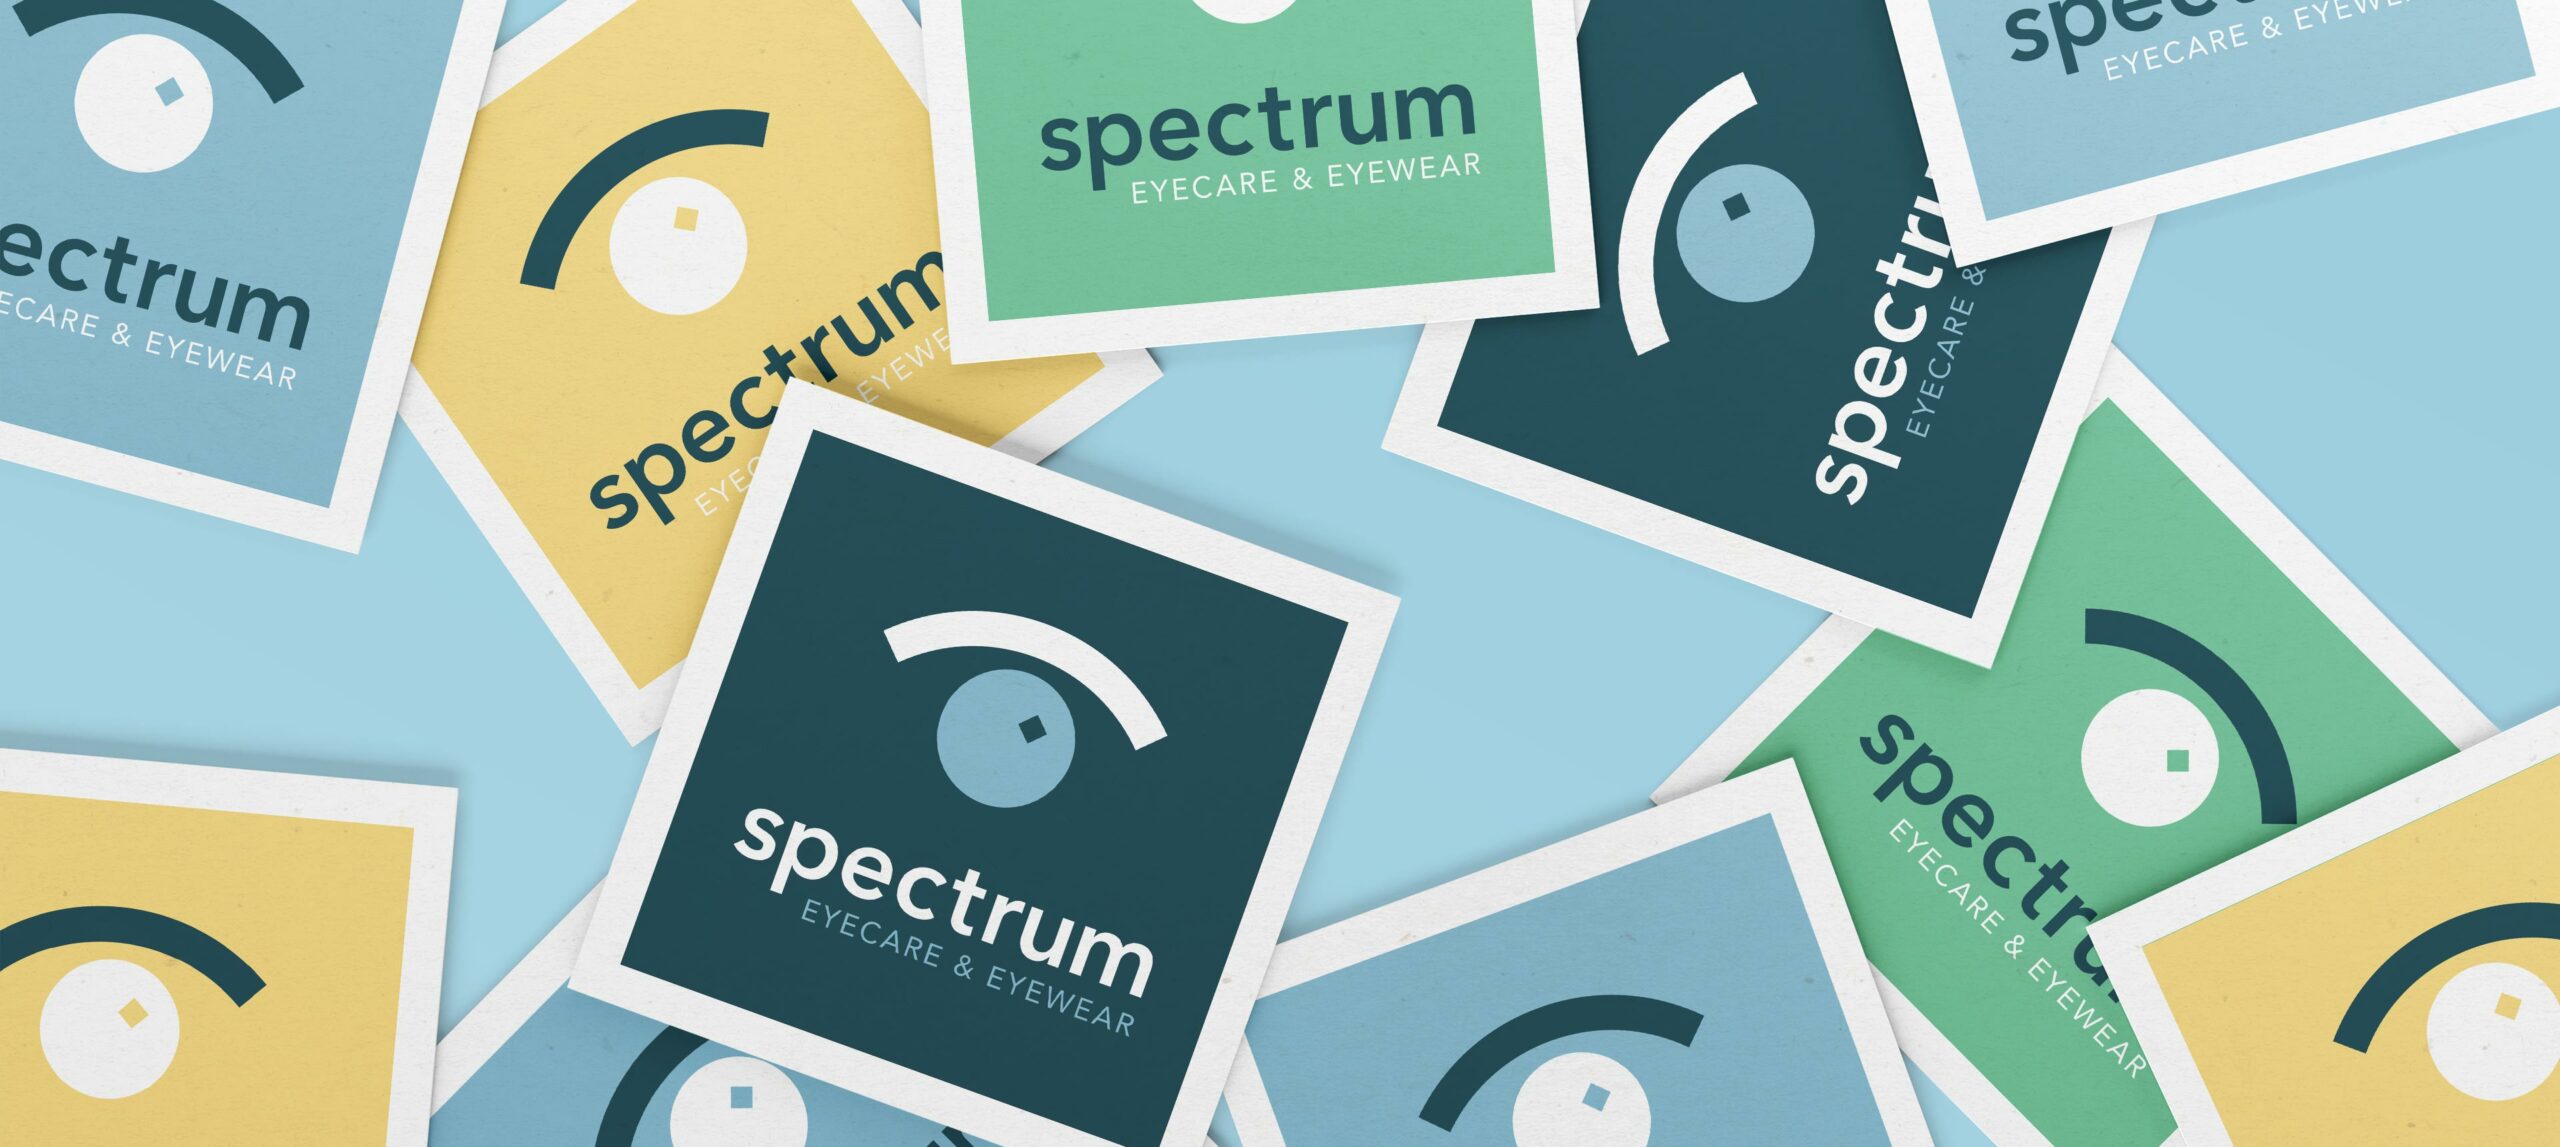 Spectrum Eyecare & eyewear